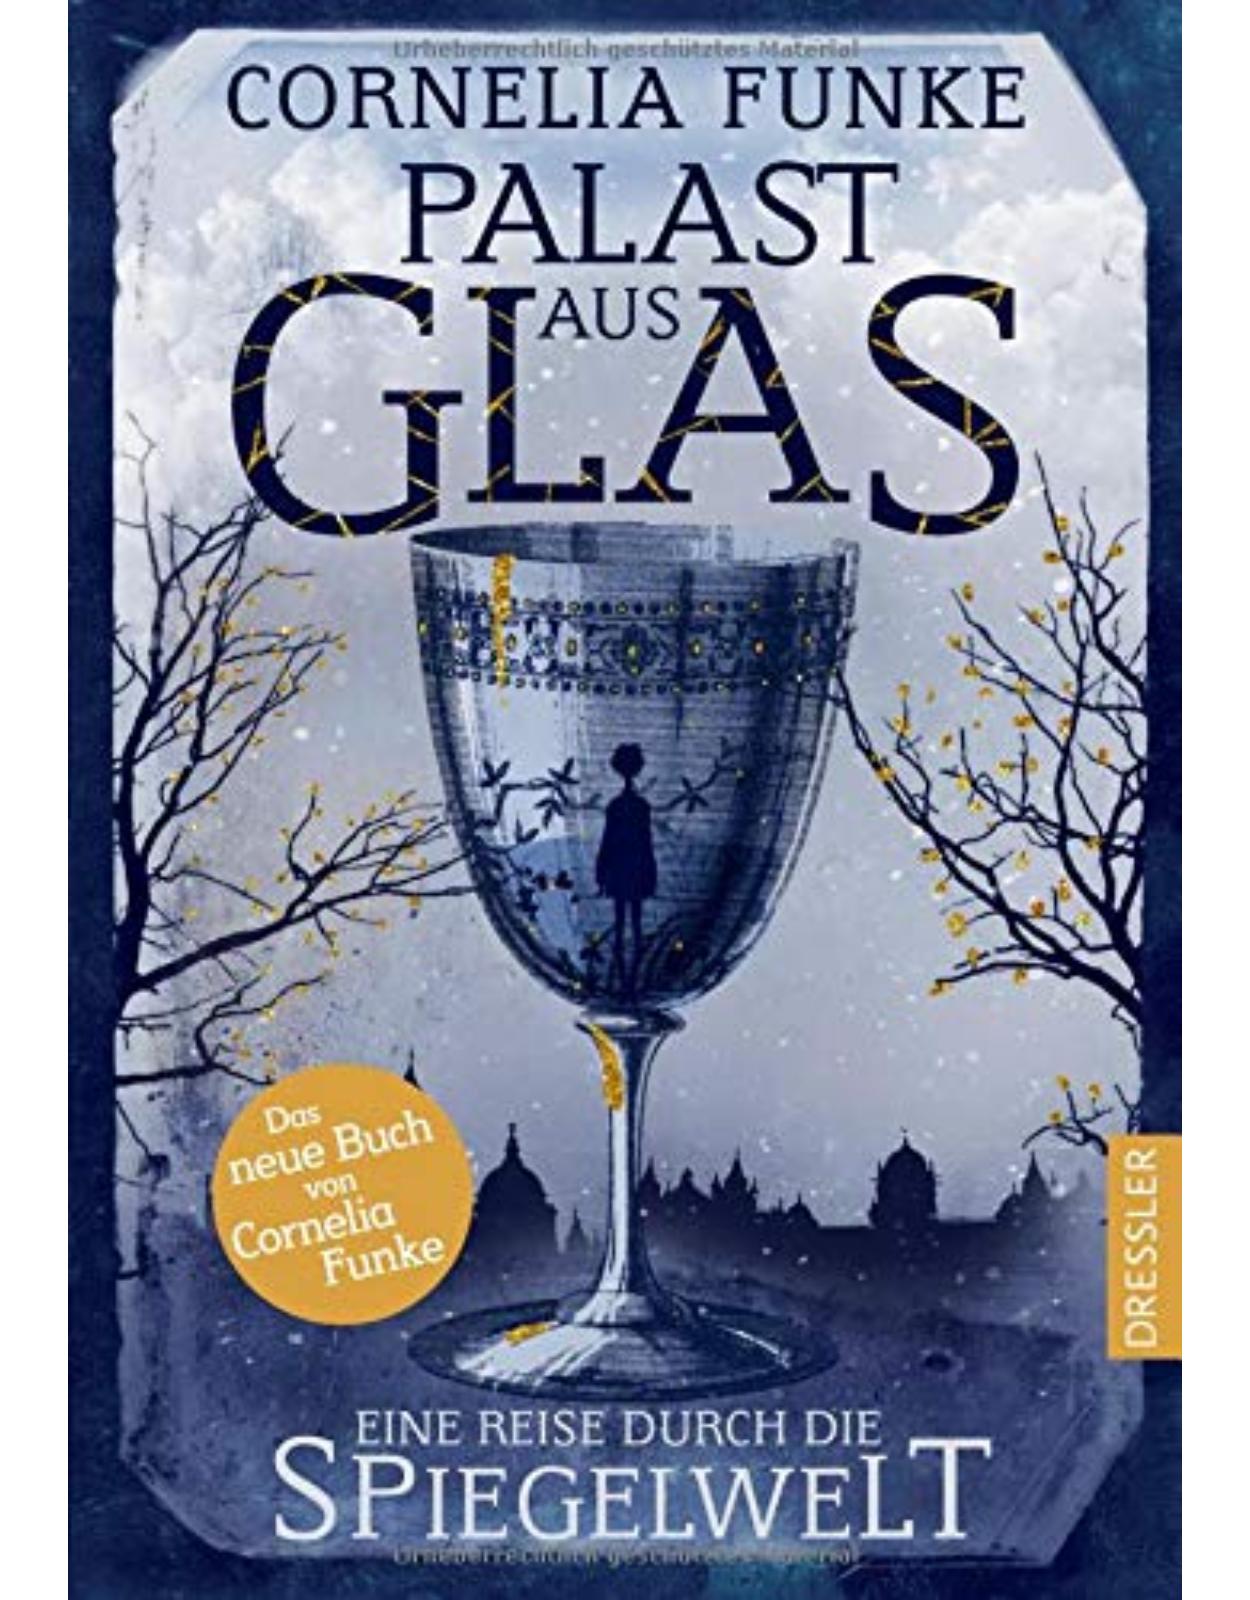 Palast aus Glas: Eine Reise durch die Spiegelwelt